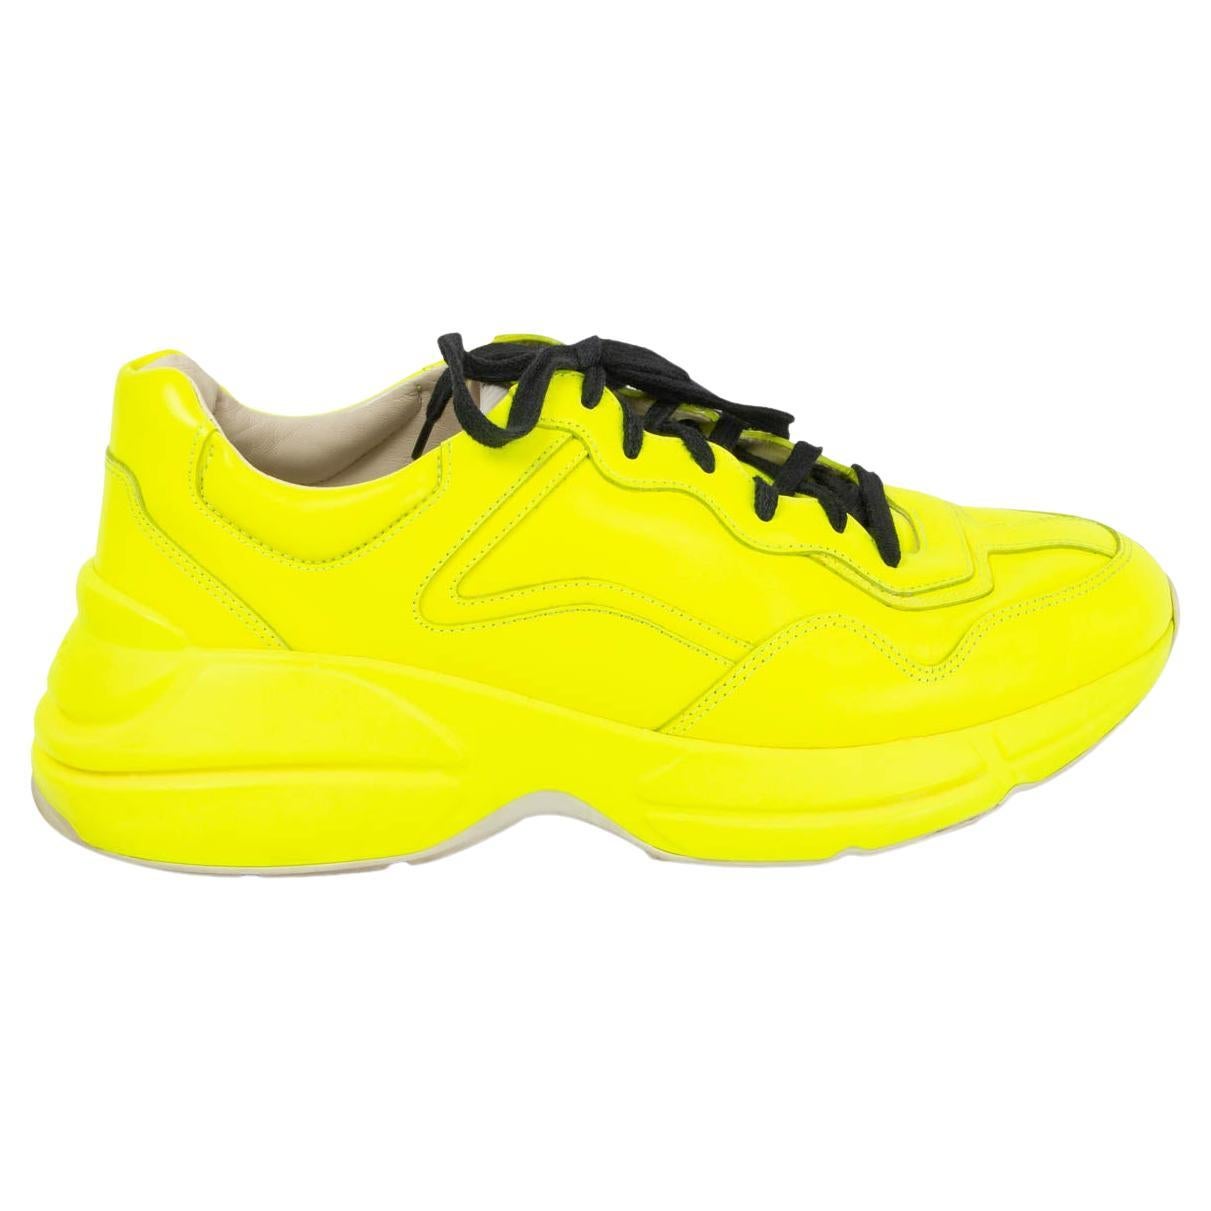 New Vans Kyle Walker Black Neon Yellow Sneakers | Yellow sneakers, Black  neon, Vans